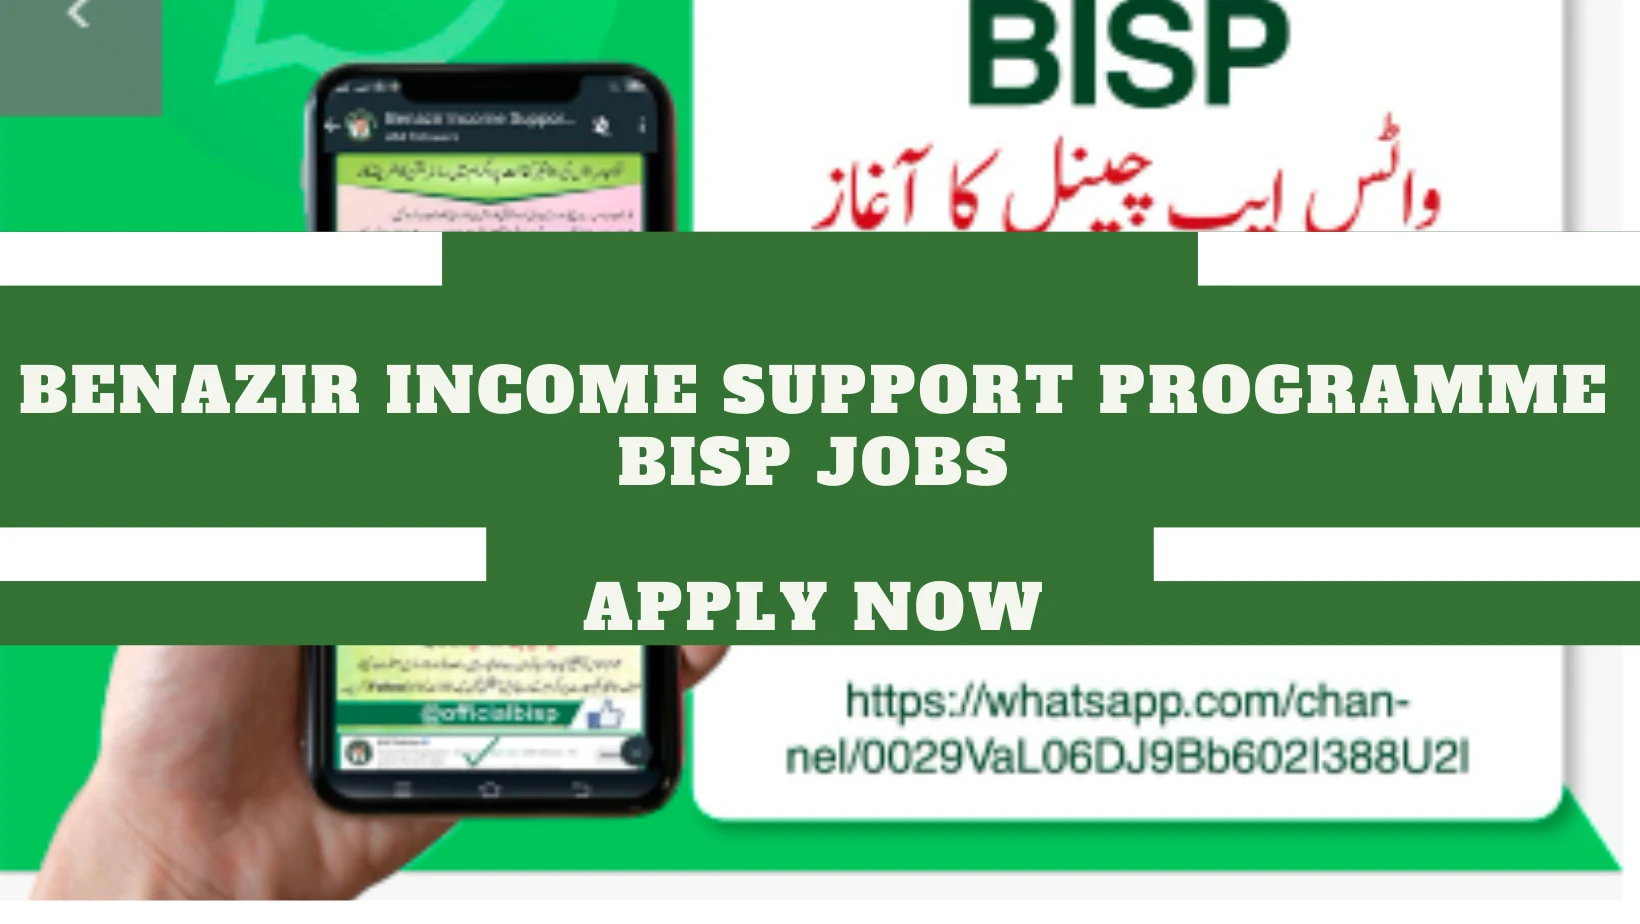 Benazir-Income-Support-Programme-BISP-Jobs